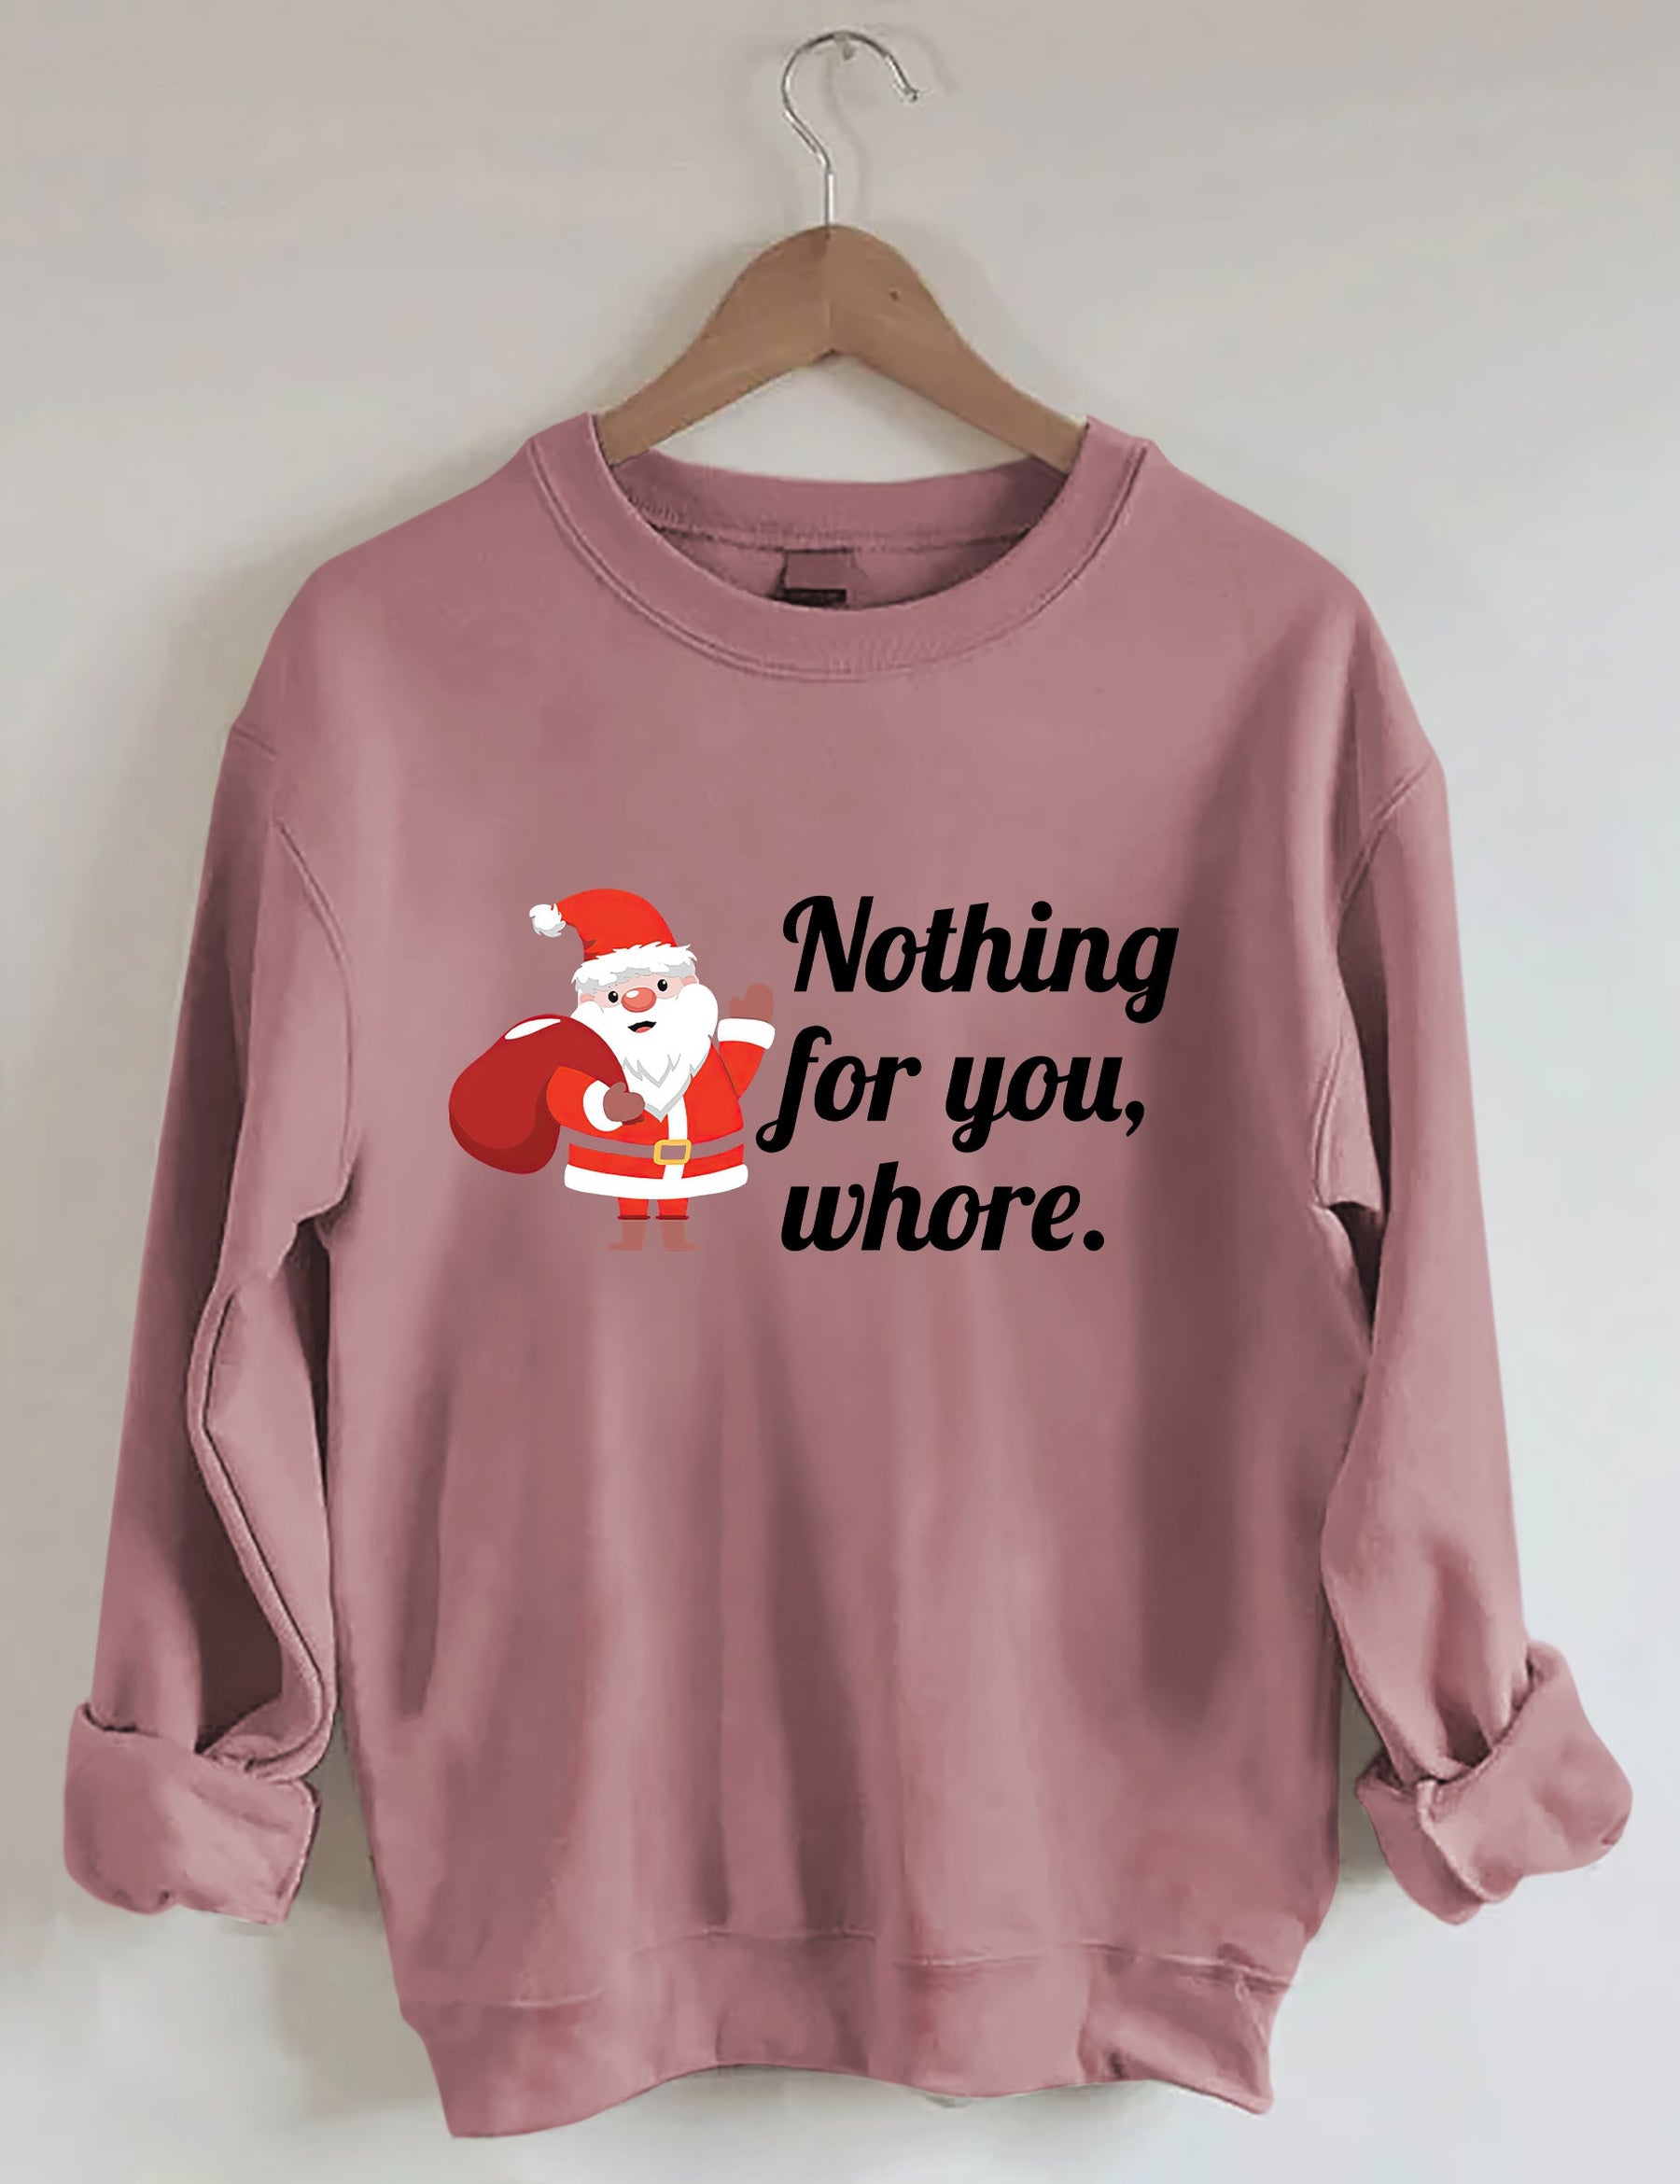 Nothing For You Christmas Sweatshirt